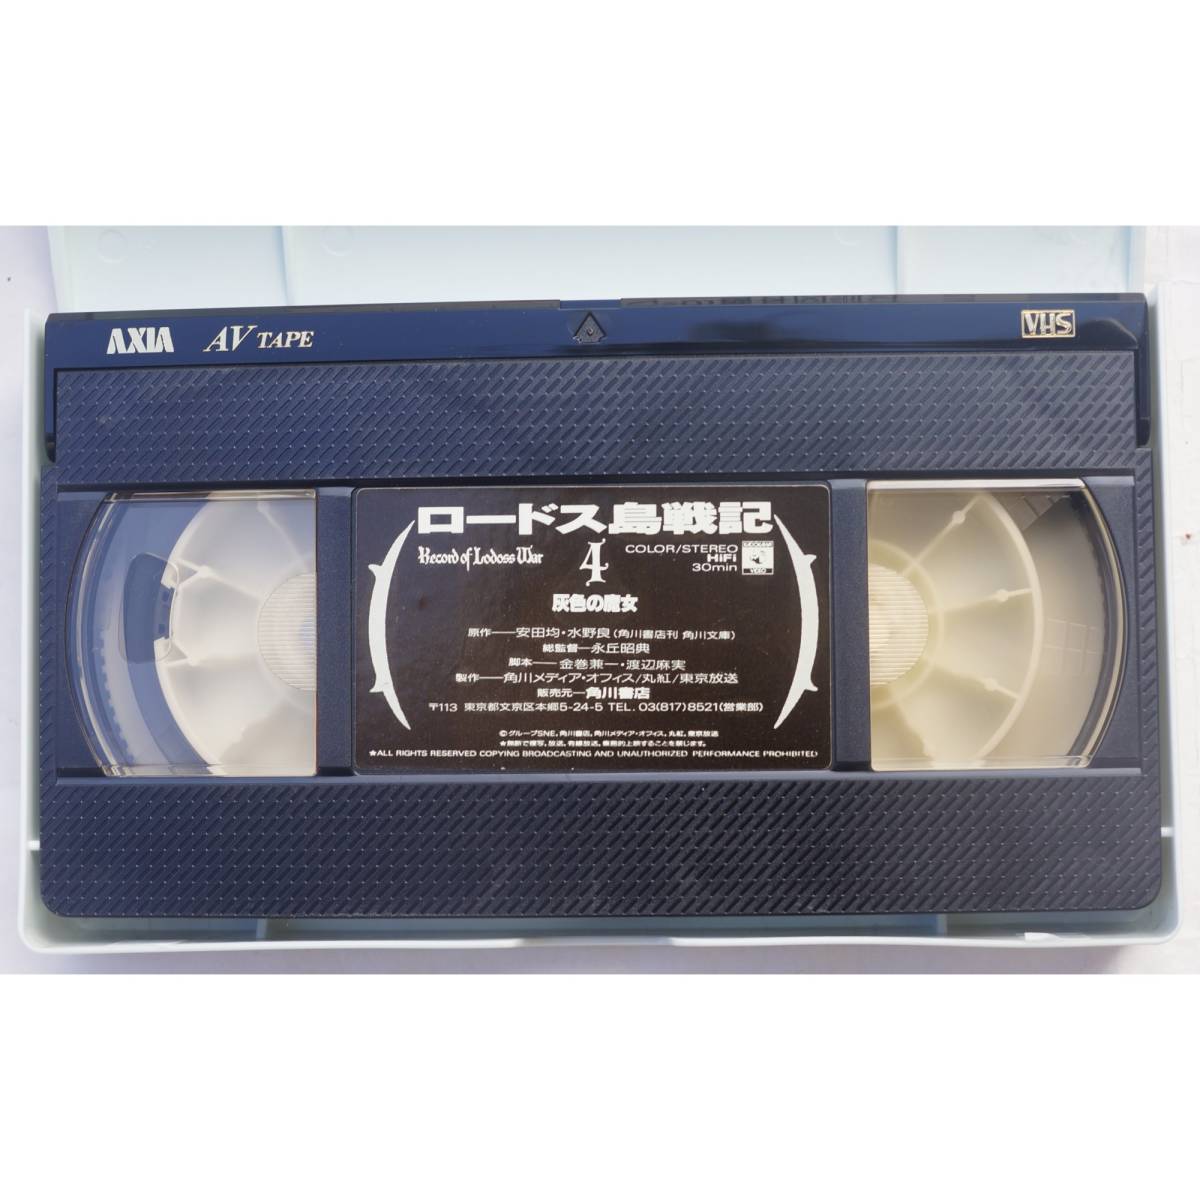 VHSビデオテープ ロードス島戦記 2 KFOVA-4